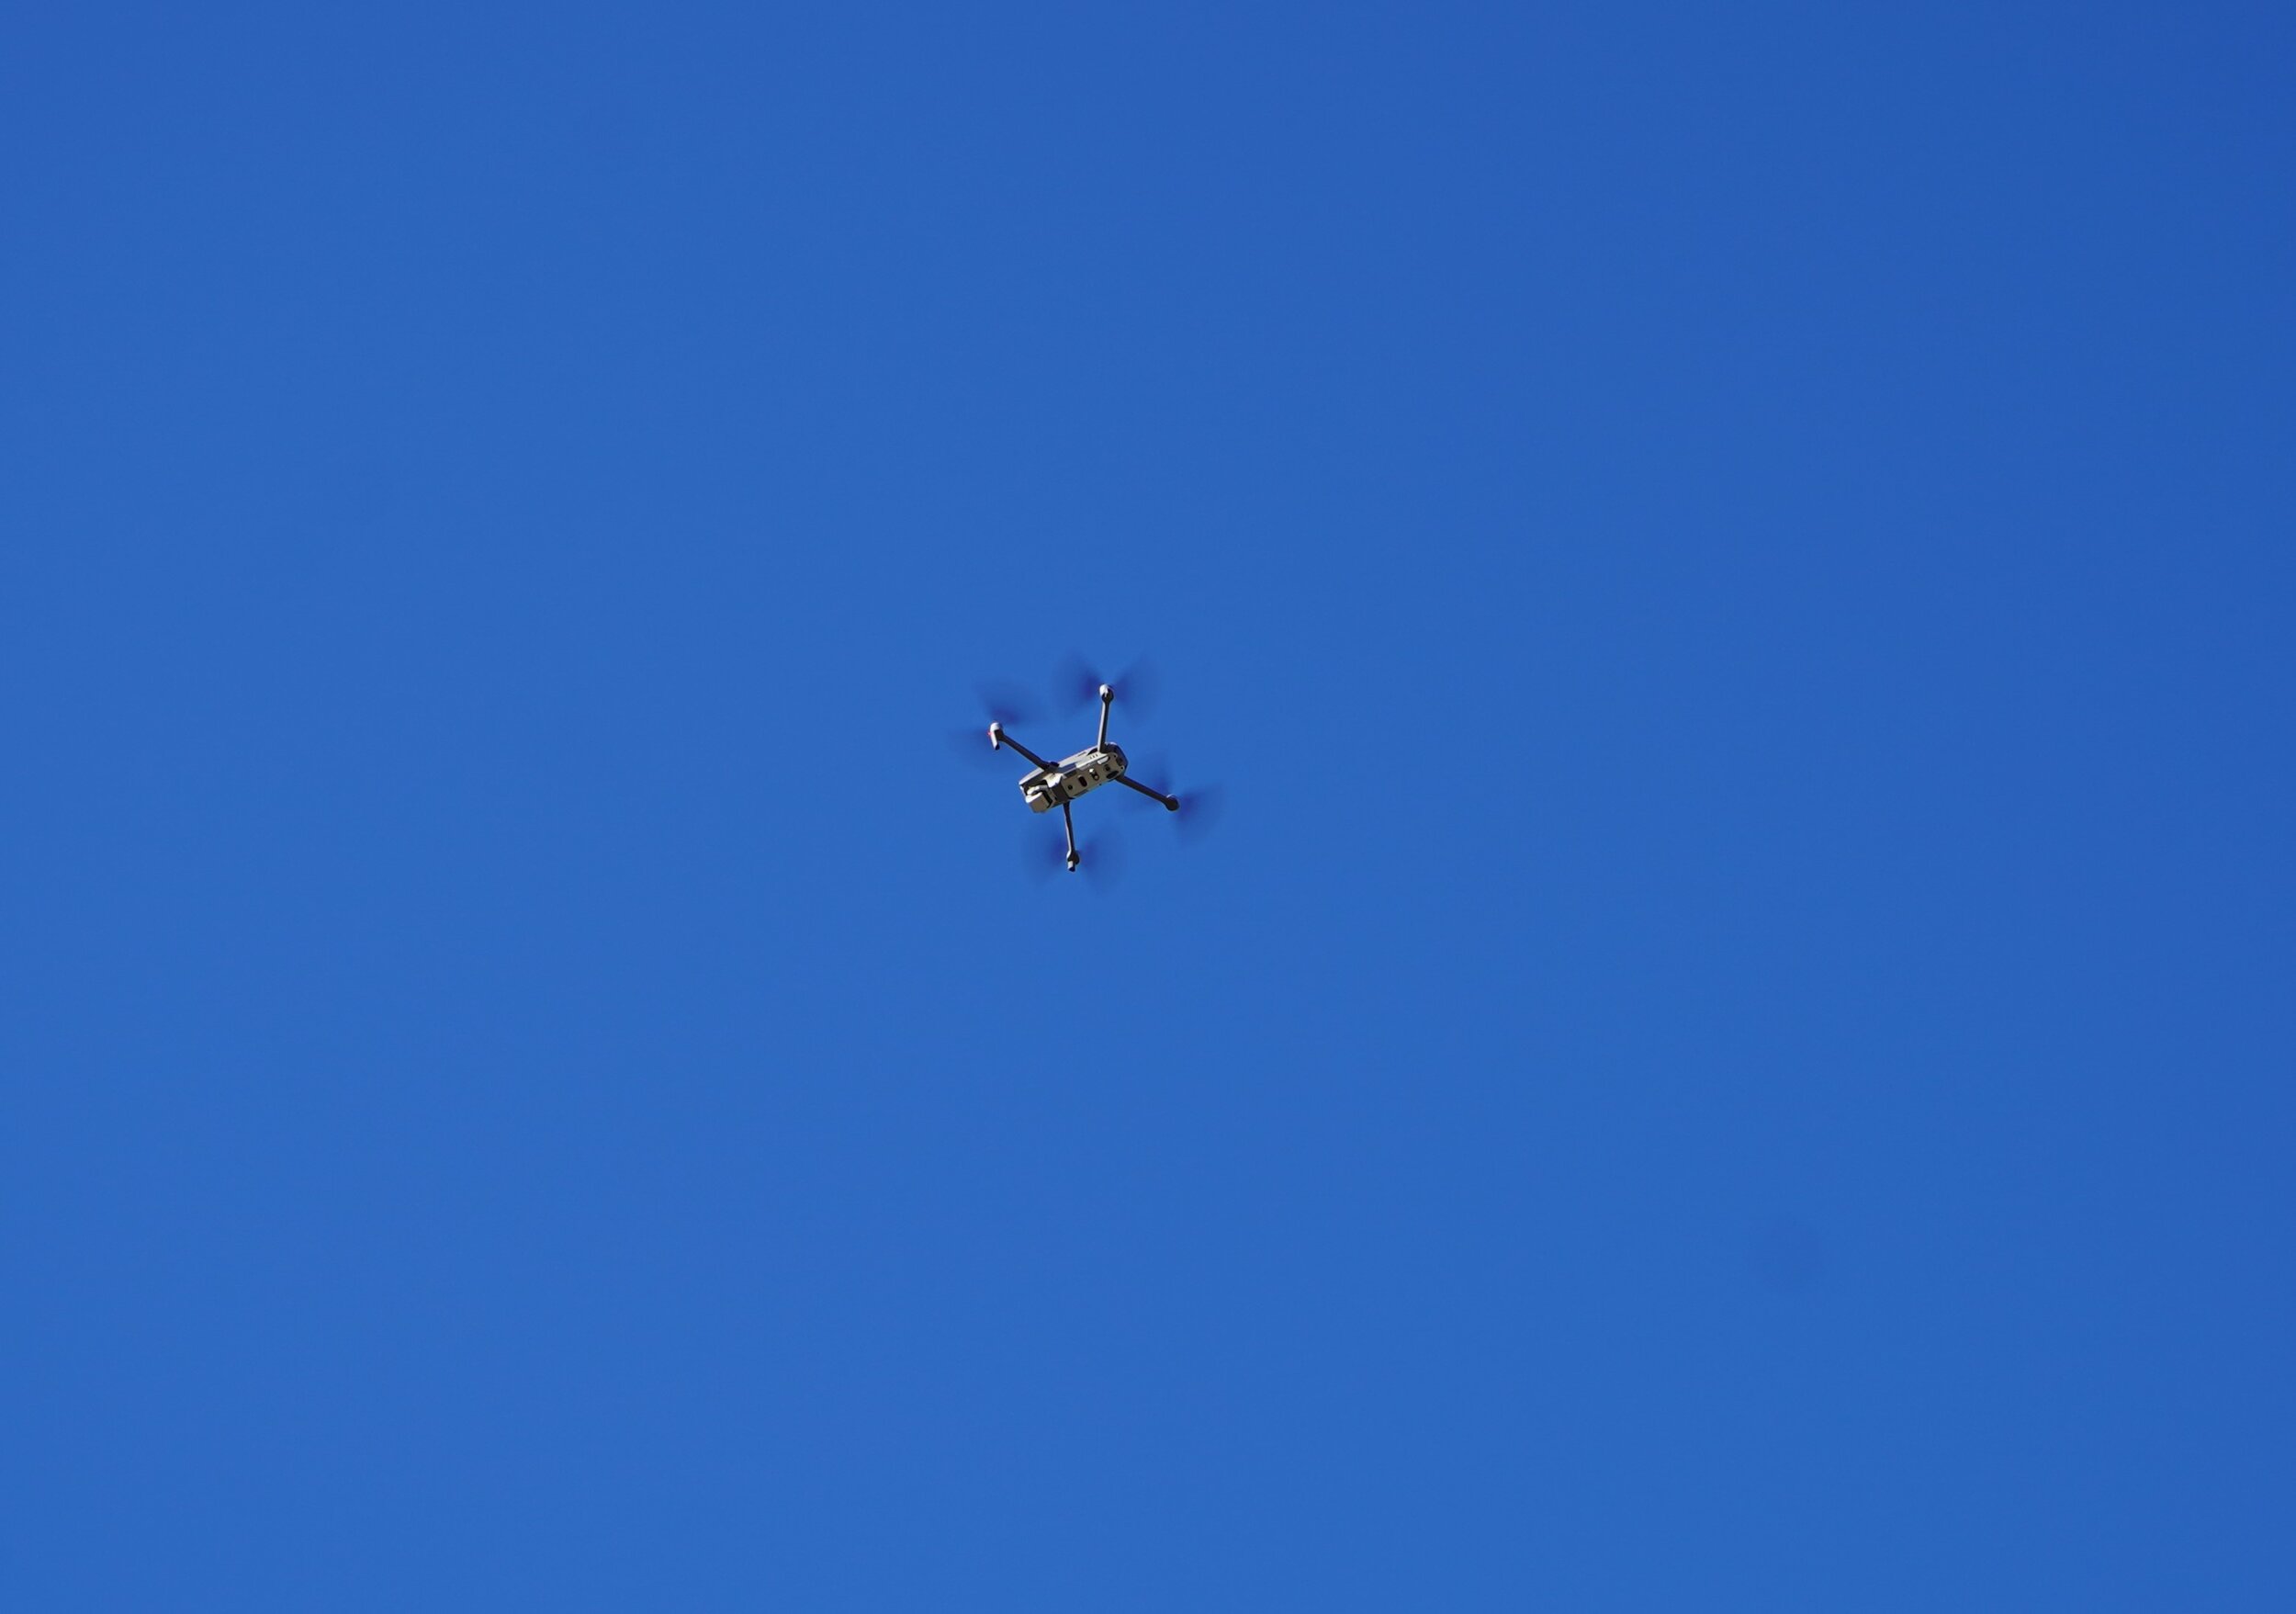 drone in flight1.jpg